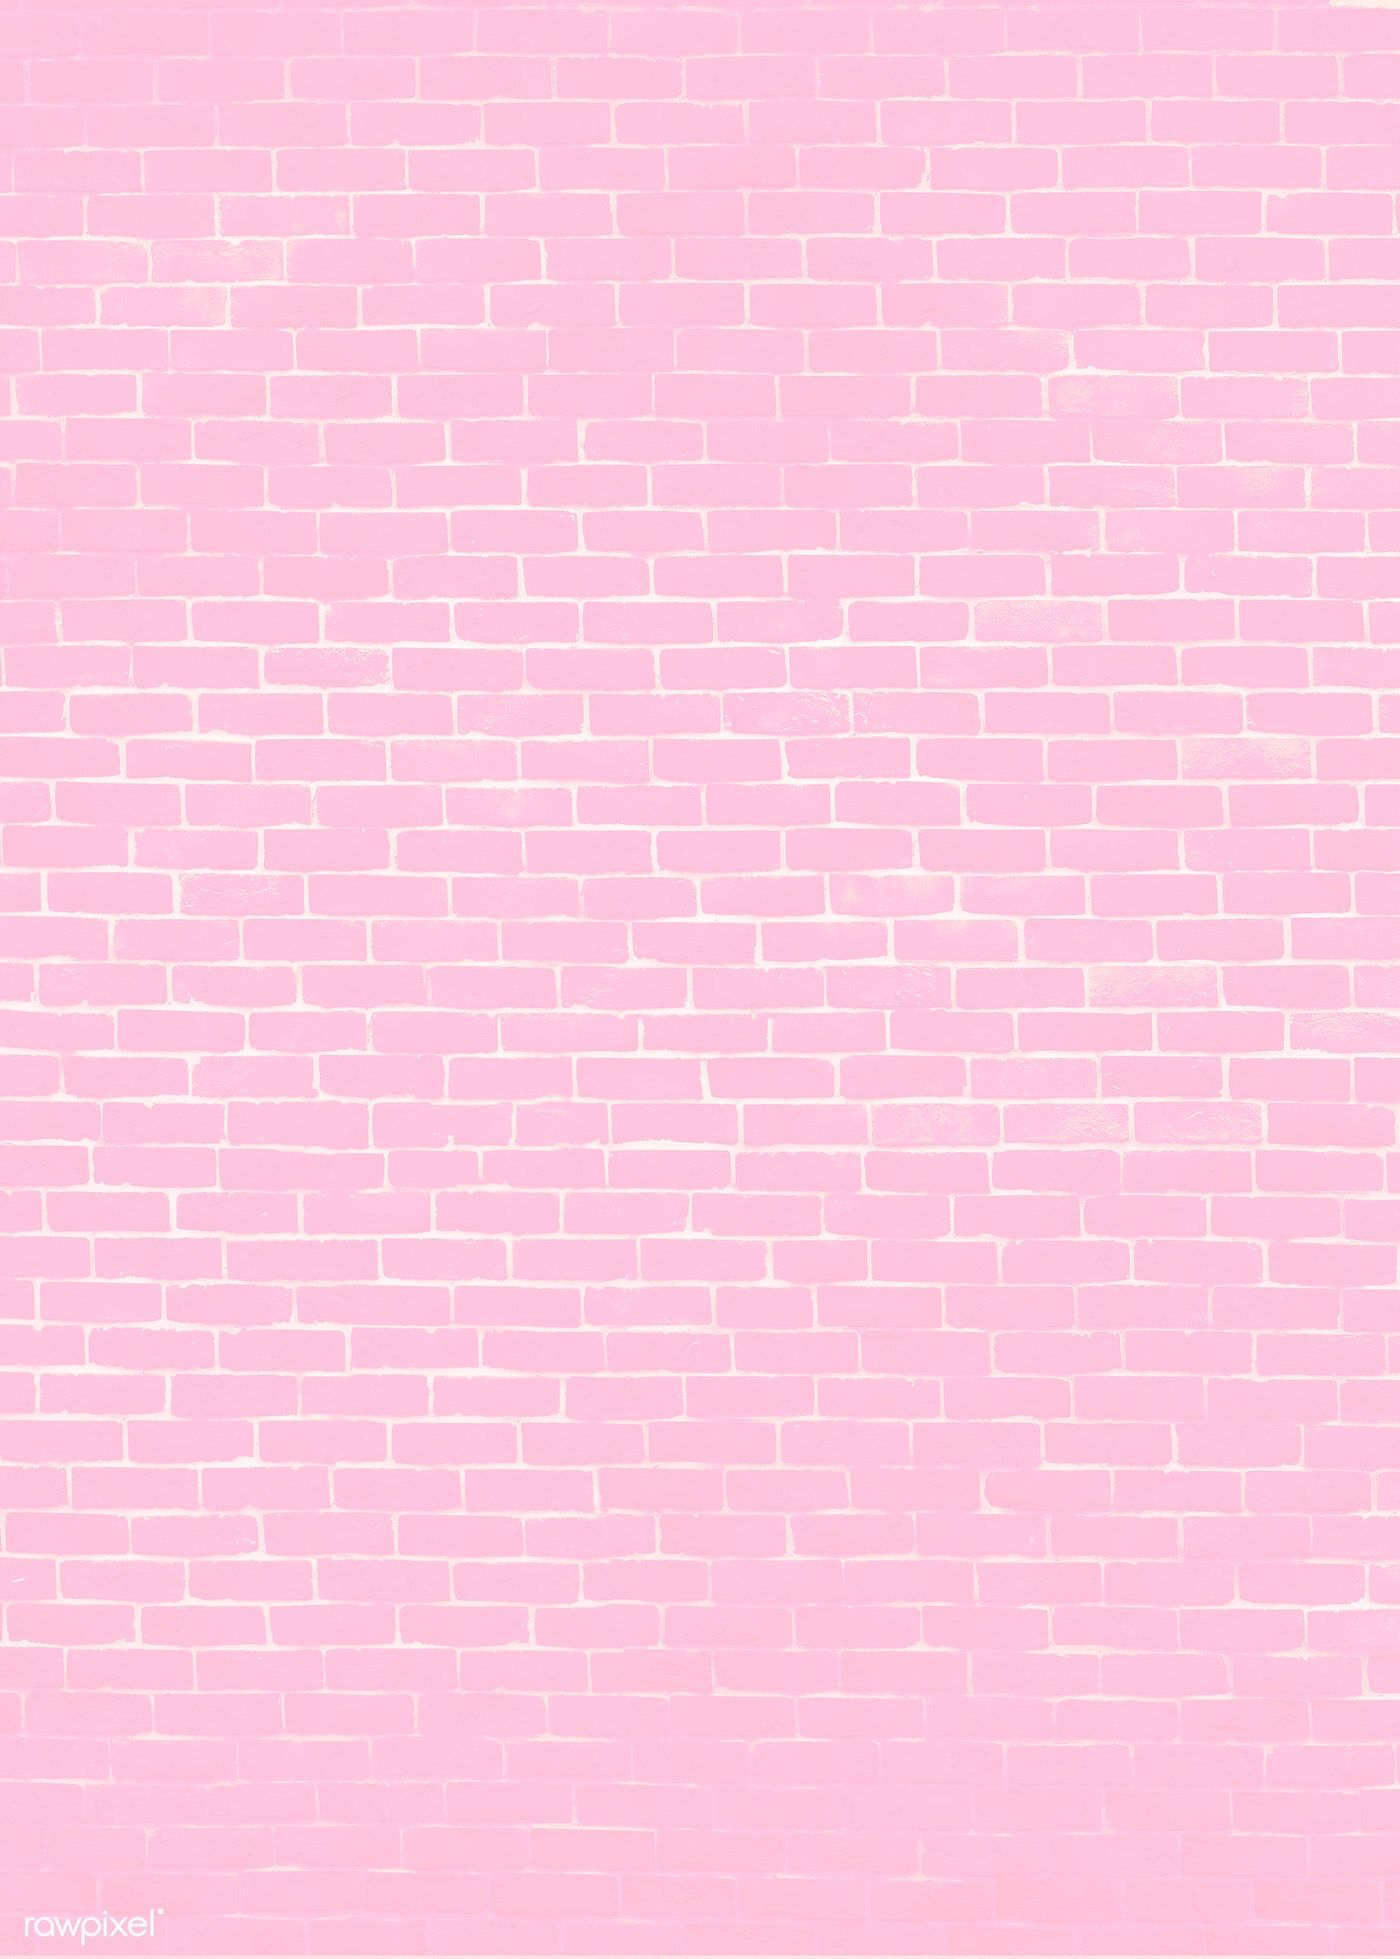 Đừng bỏ lỡ cơ hội tải về miễn phí hơn 100 mẫu nền tường gạch hồng độc đáo từ Stock Photo. Tất cả các mẫu ảnh đều thể hiện được sự đa dạng và sự tinh tế trong thiết kế. Lựa chọn để tạo nên một không gian sống tuyệt vời cho bạn!